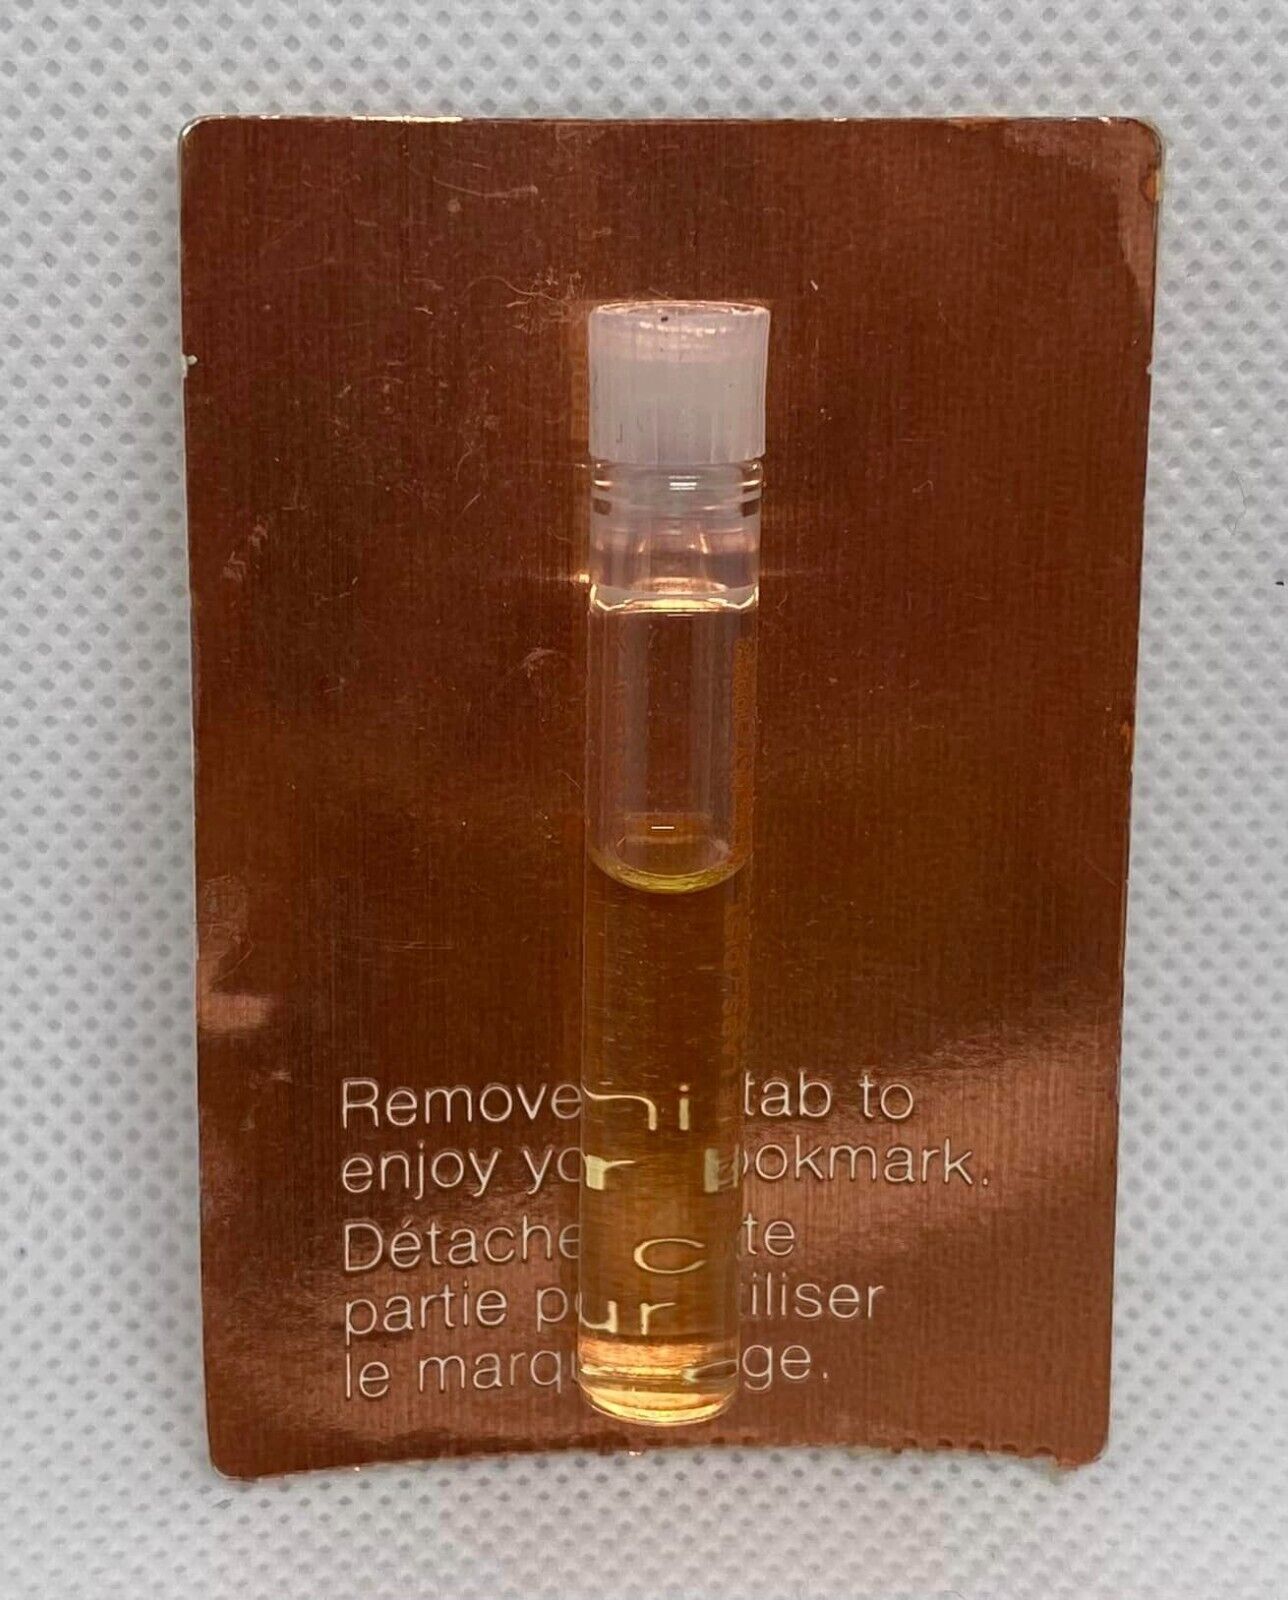 Vial Sample Simply by Clinique Eau de Toilette Perfume Parfum Profumo 1ml 0.03oz